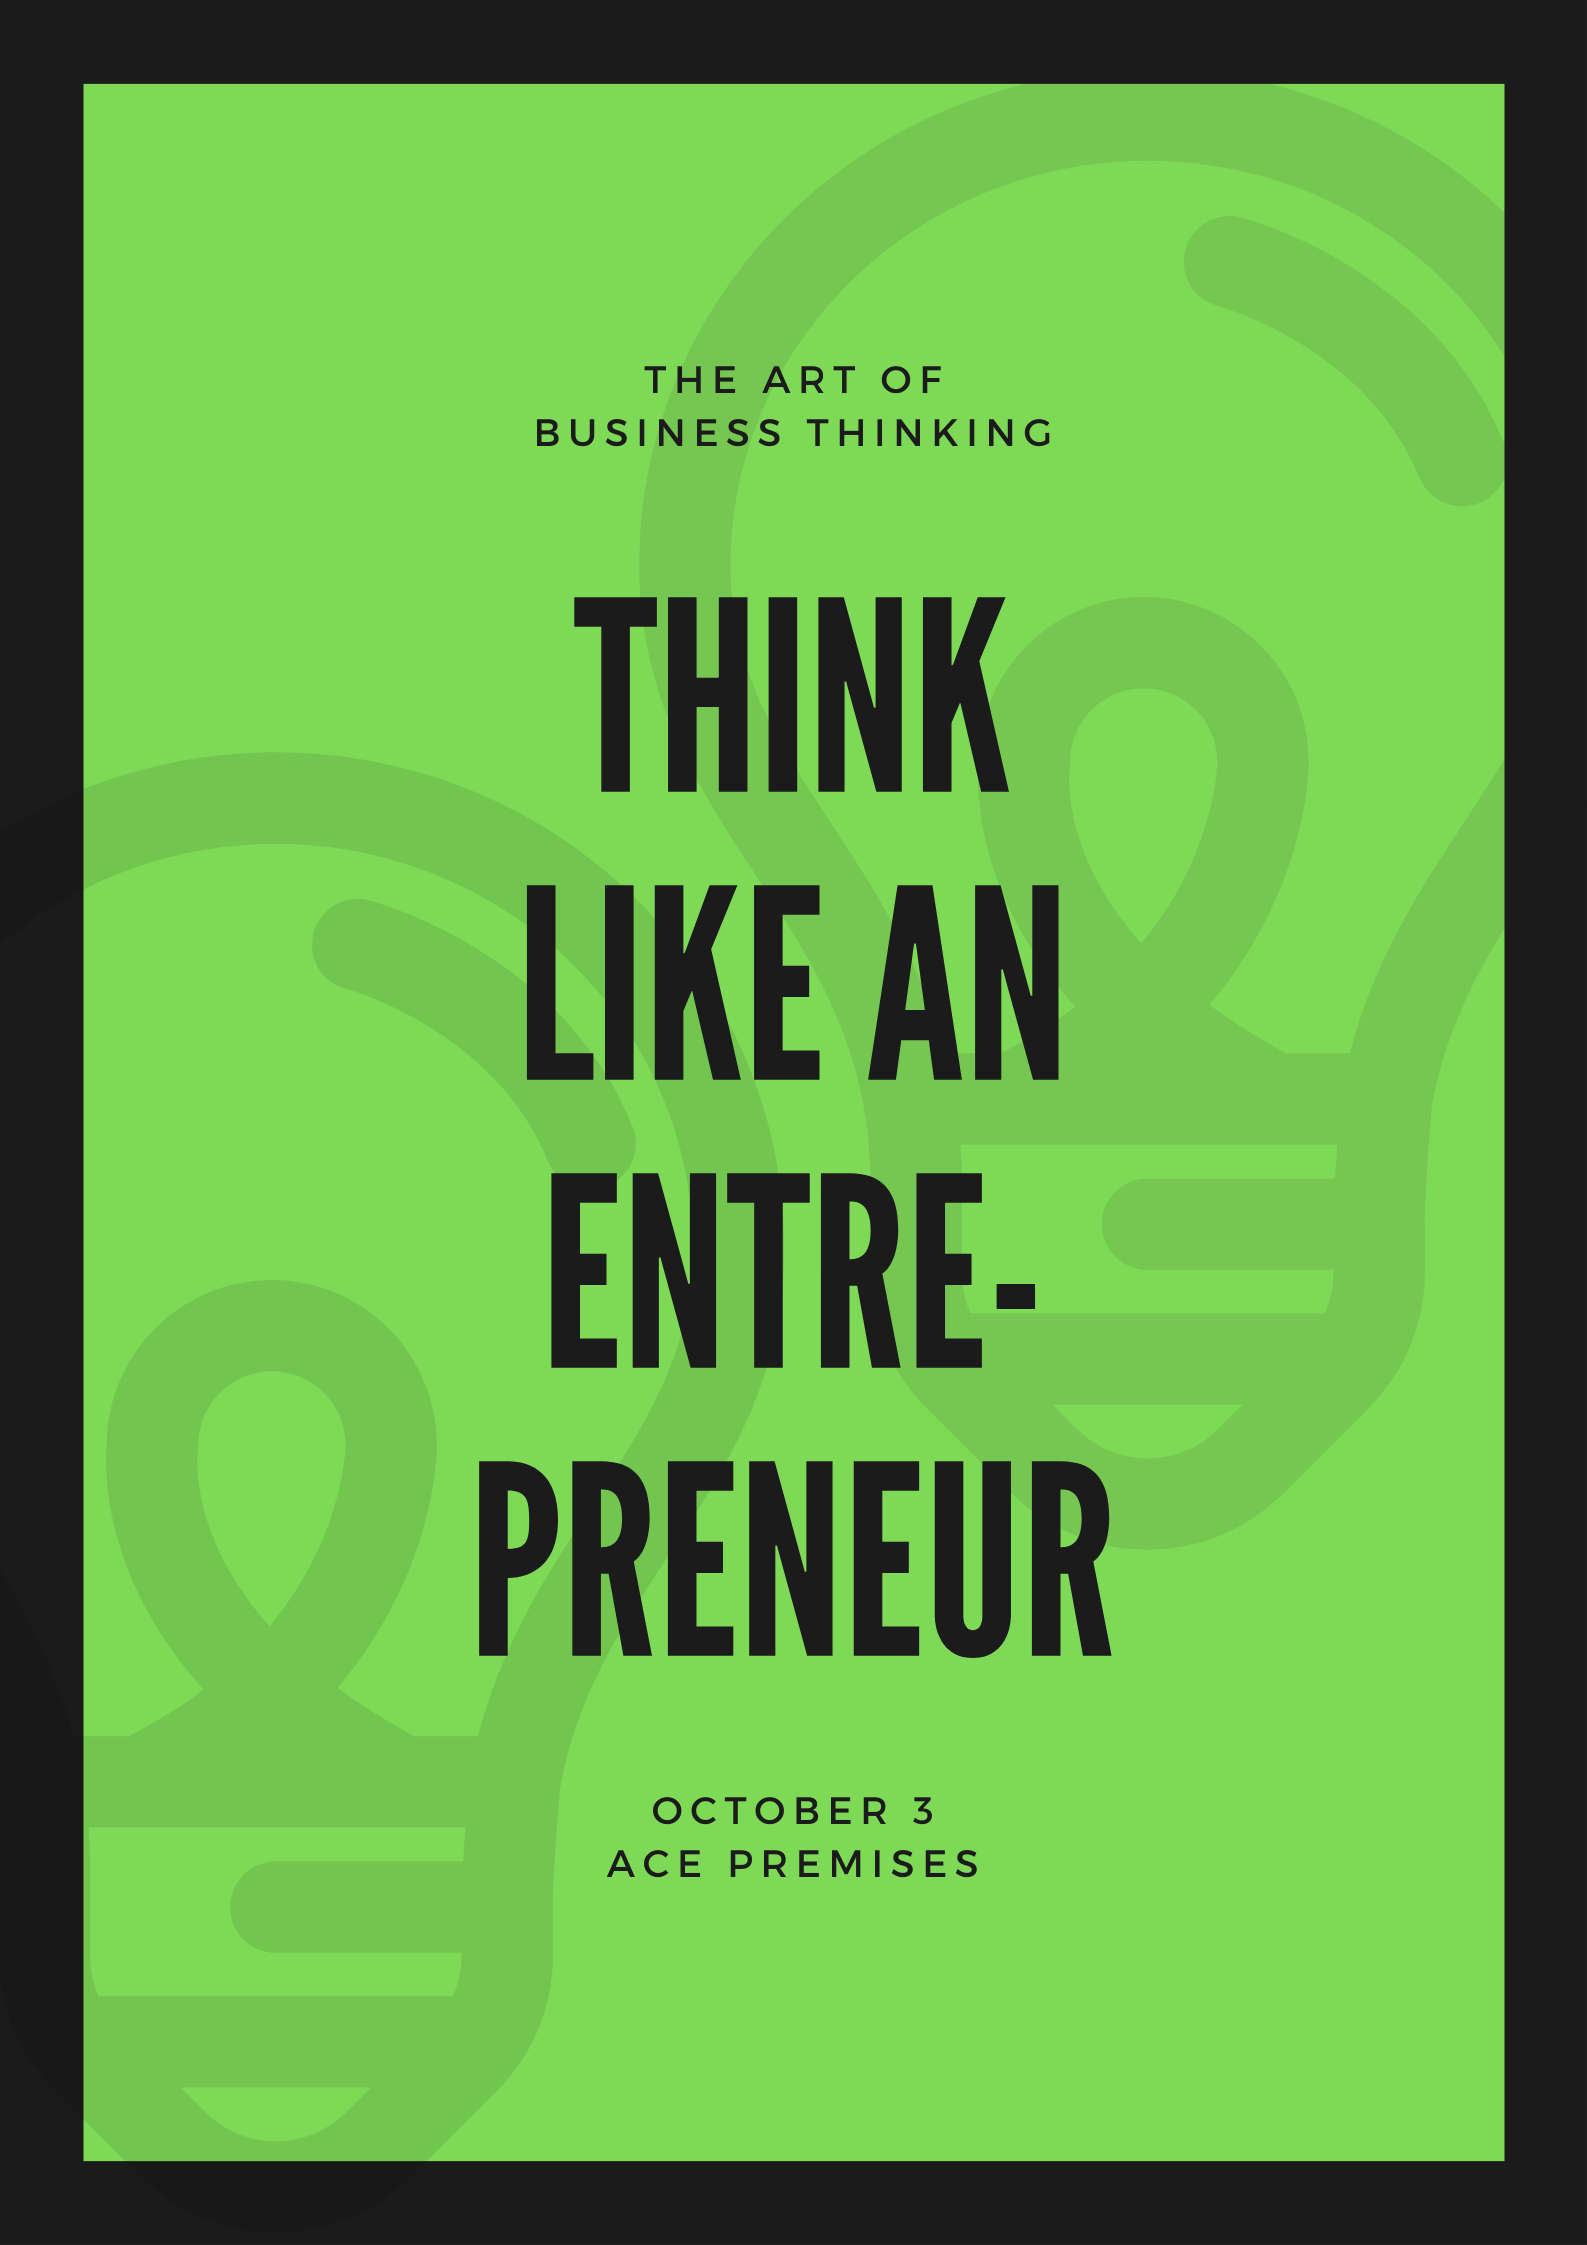 Think-Like-an-Entrepreneur